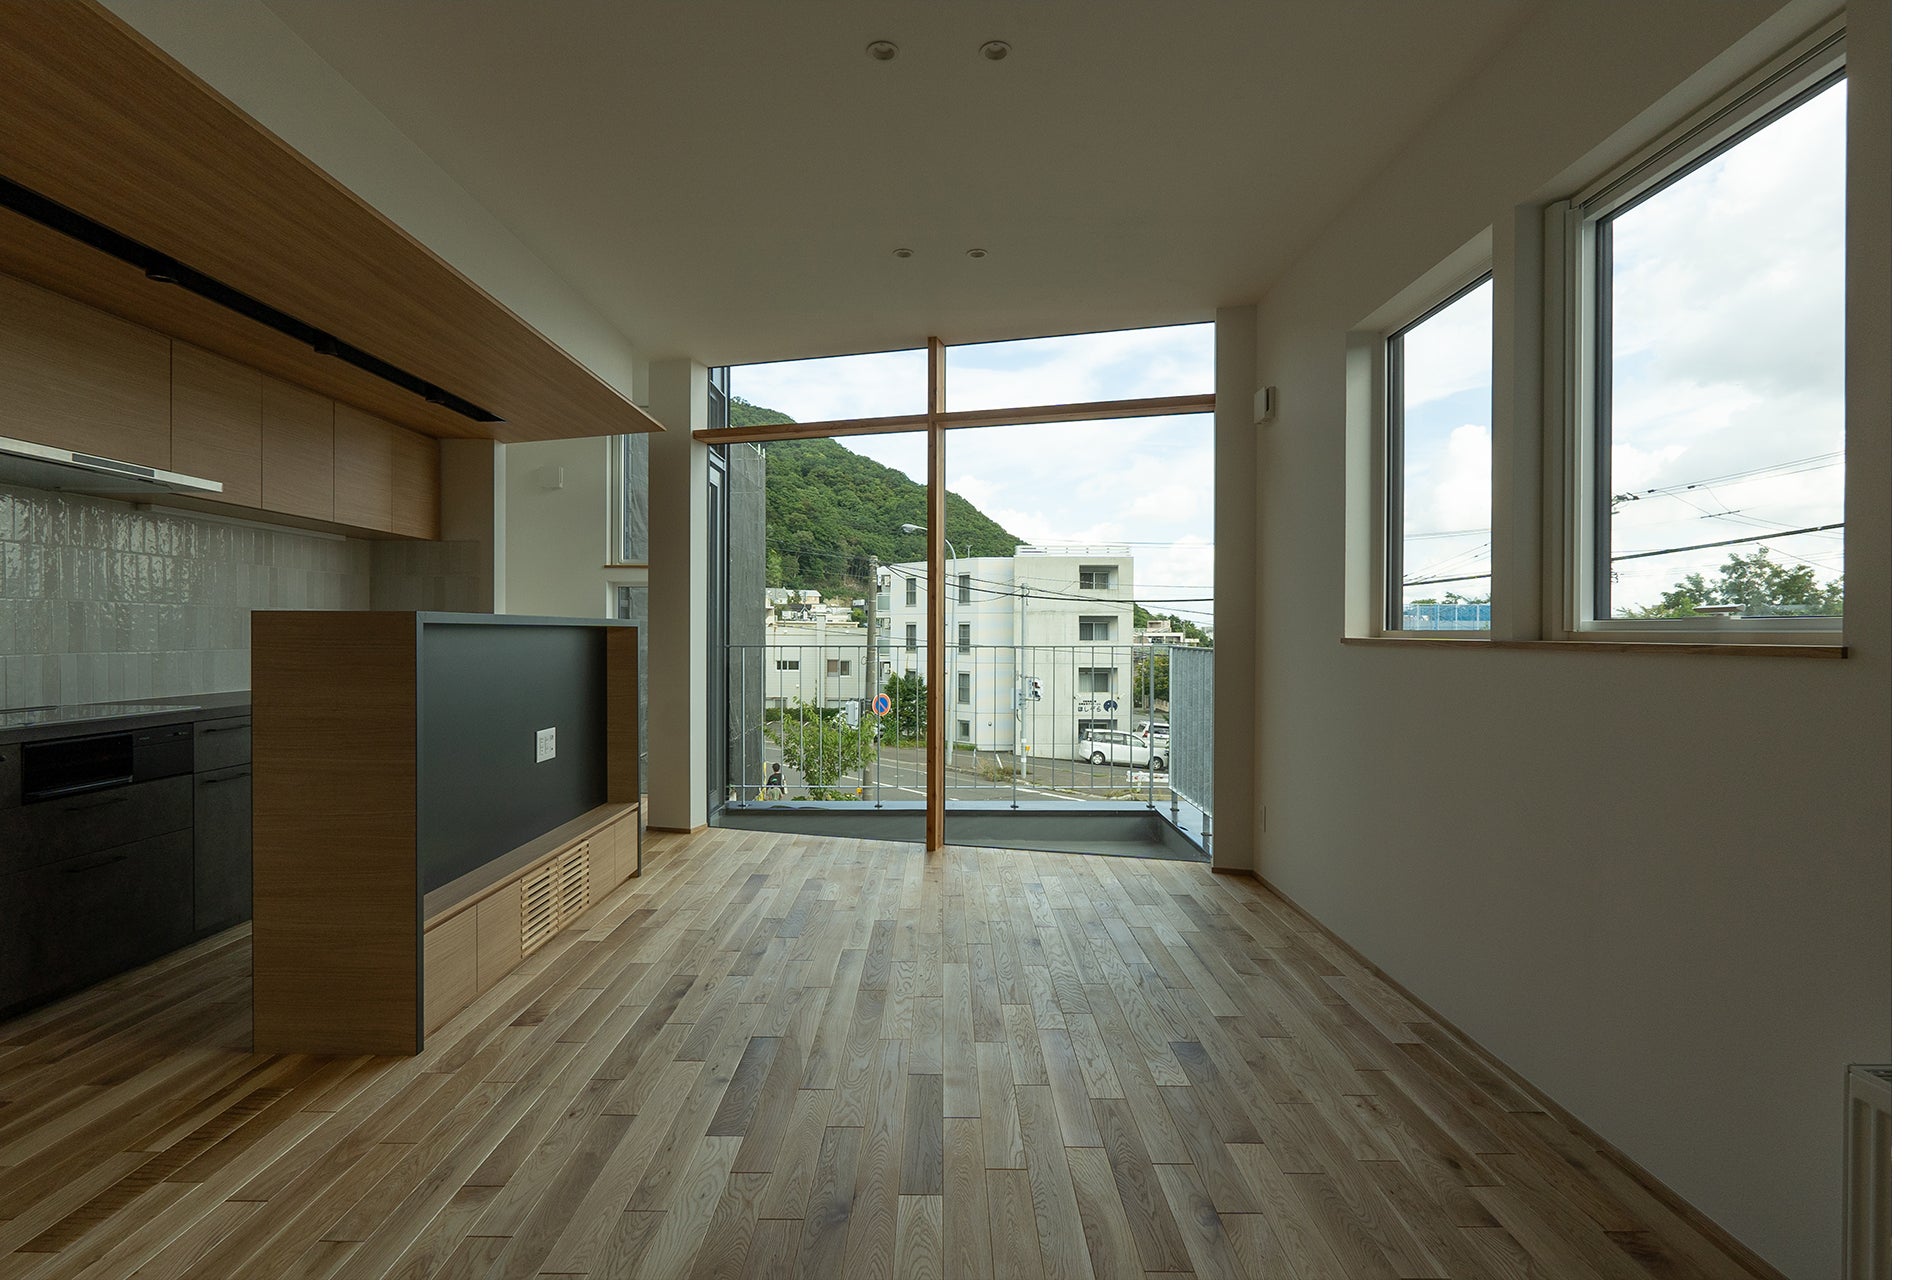 札幌市中央区に3階建て木造分譲マンション「TOU(棟)」が誕生。戸建住宅とマンションのメリットが融合した新たな暮らしを提案。のサブ画像2